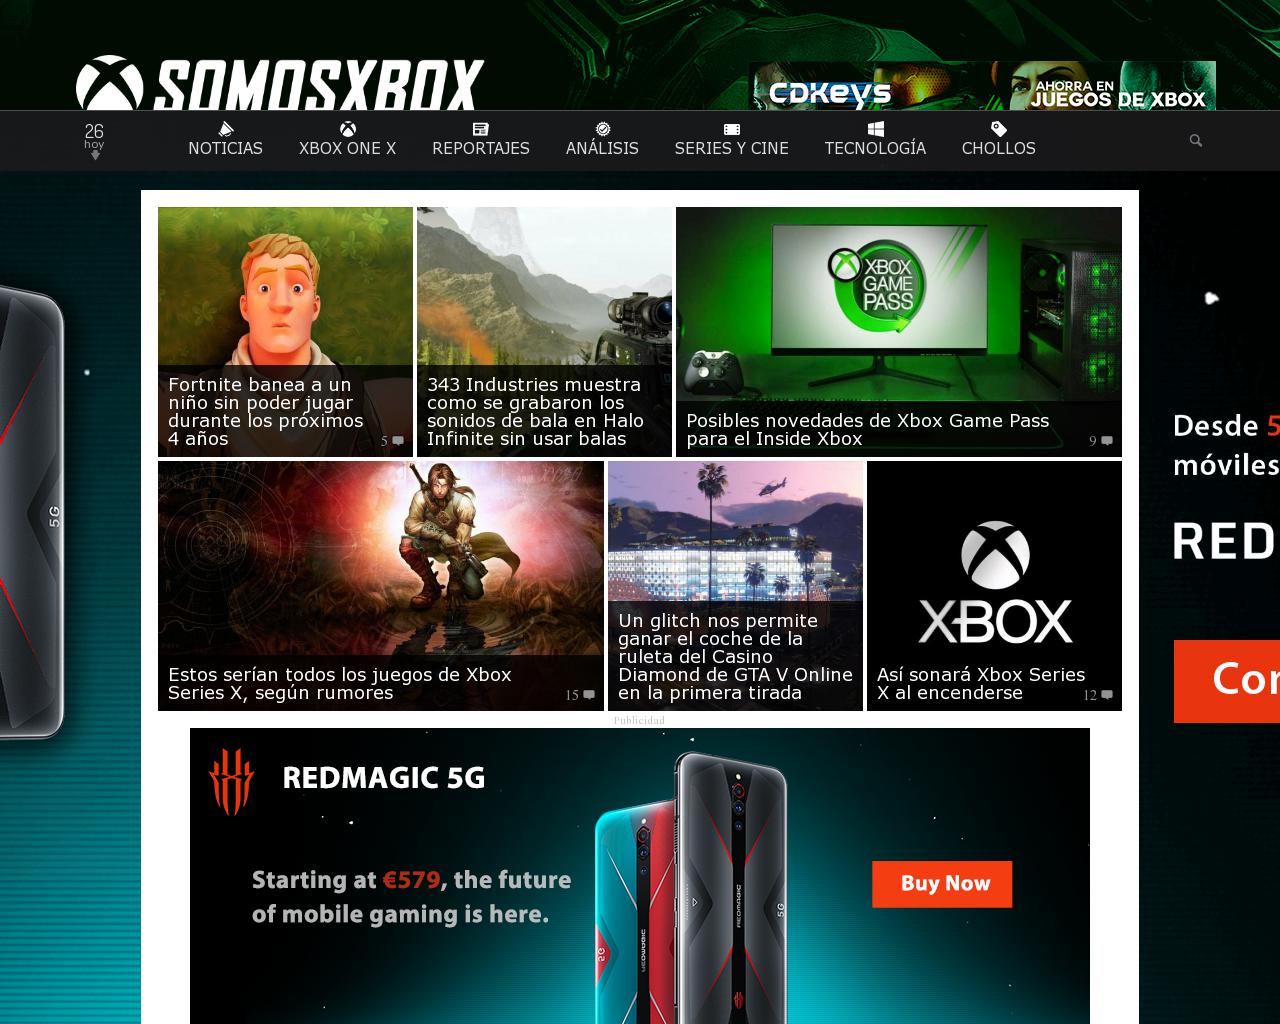 somosxbox.com